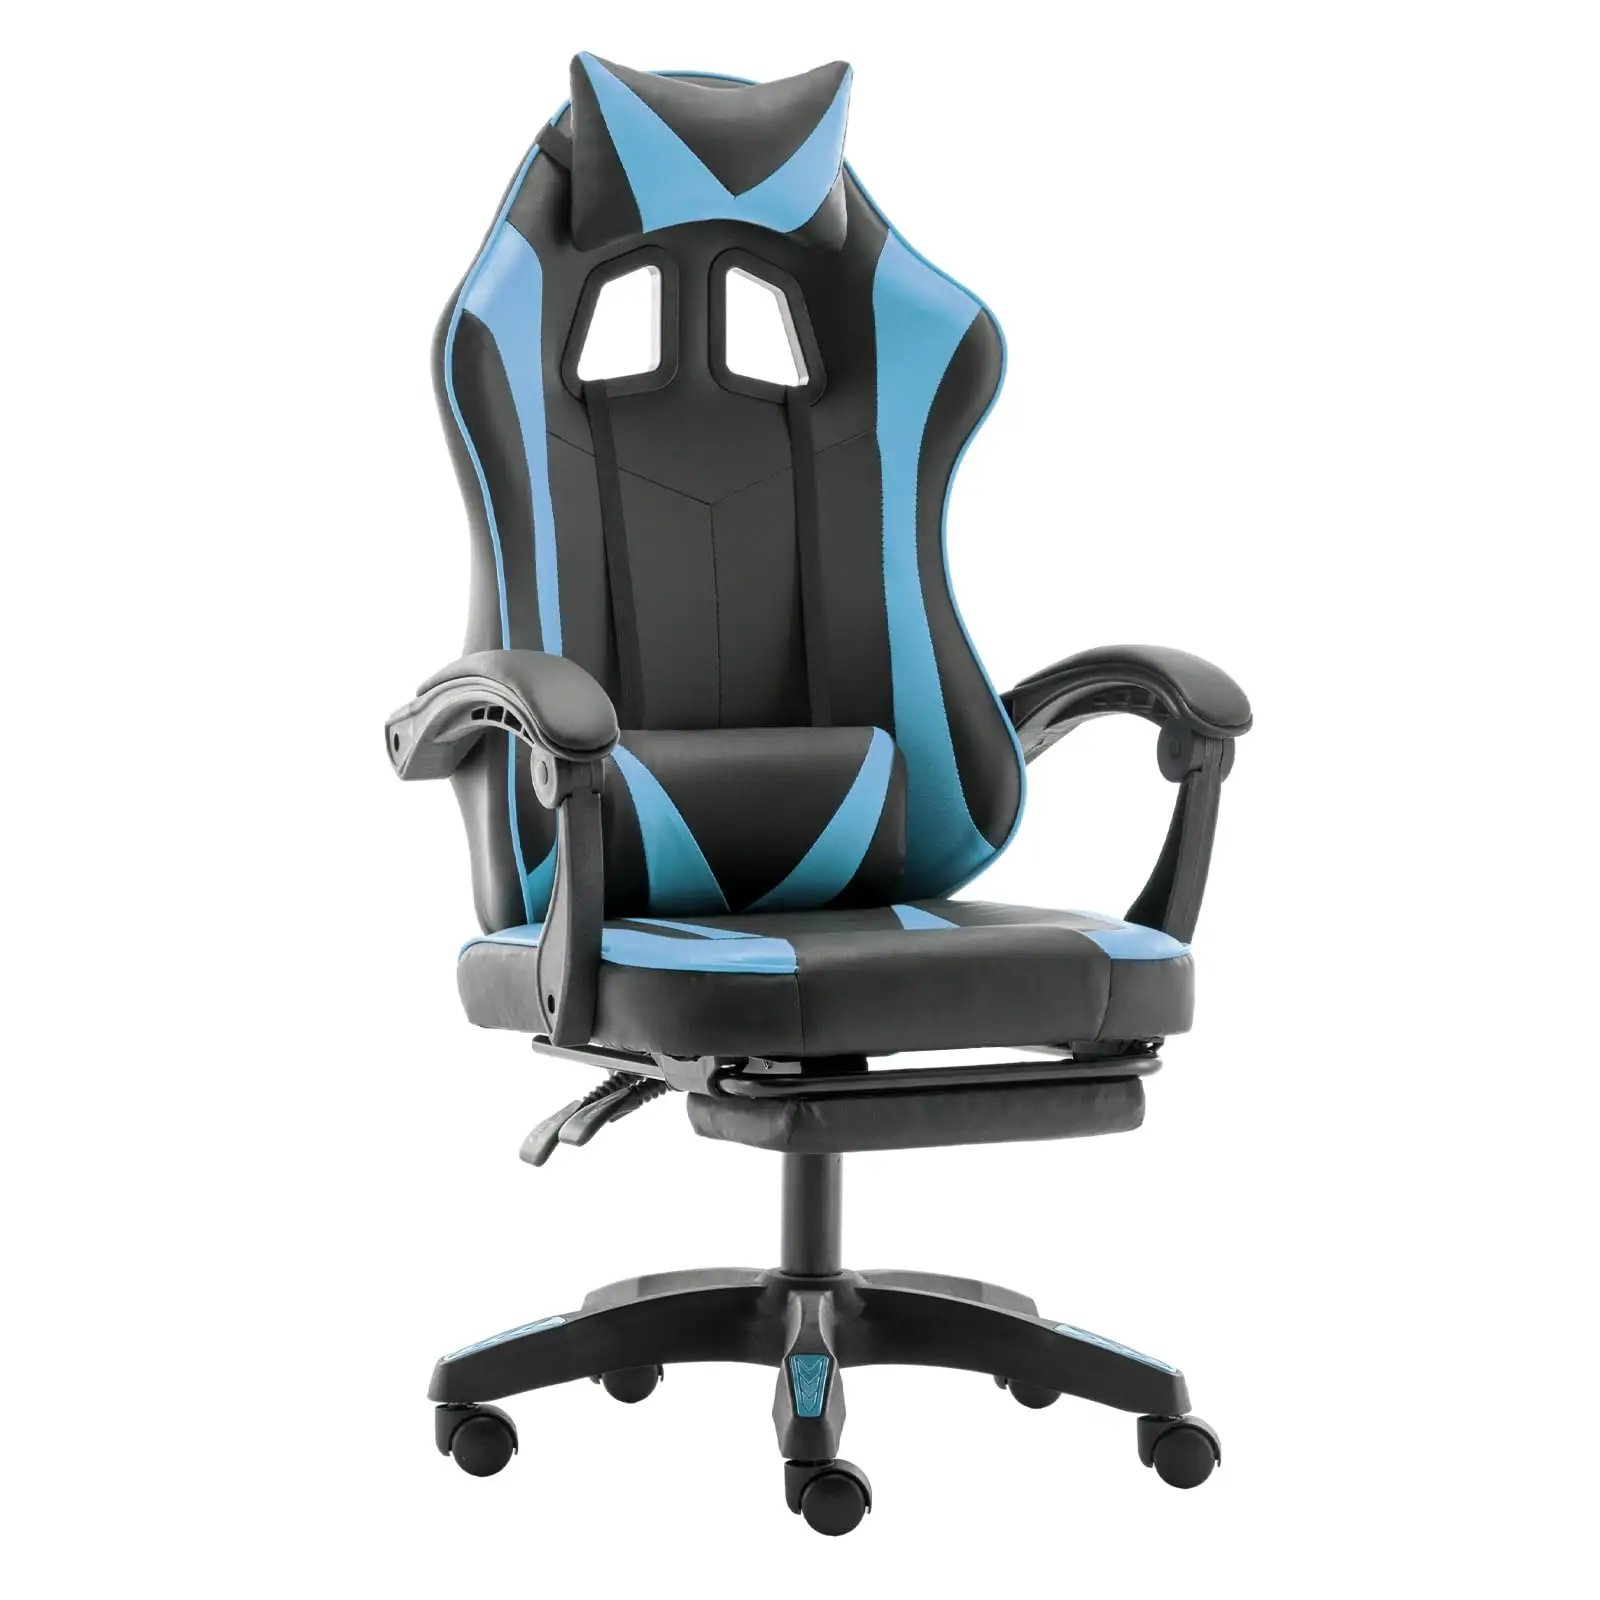 Chaise à dossier haut Chaises de jeux vidéo ergonomiques Chaise inclinable réglable en hauteur avec soutien lombaire A